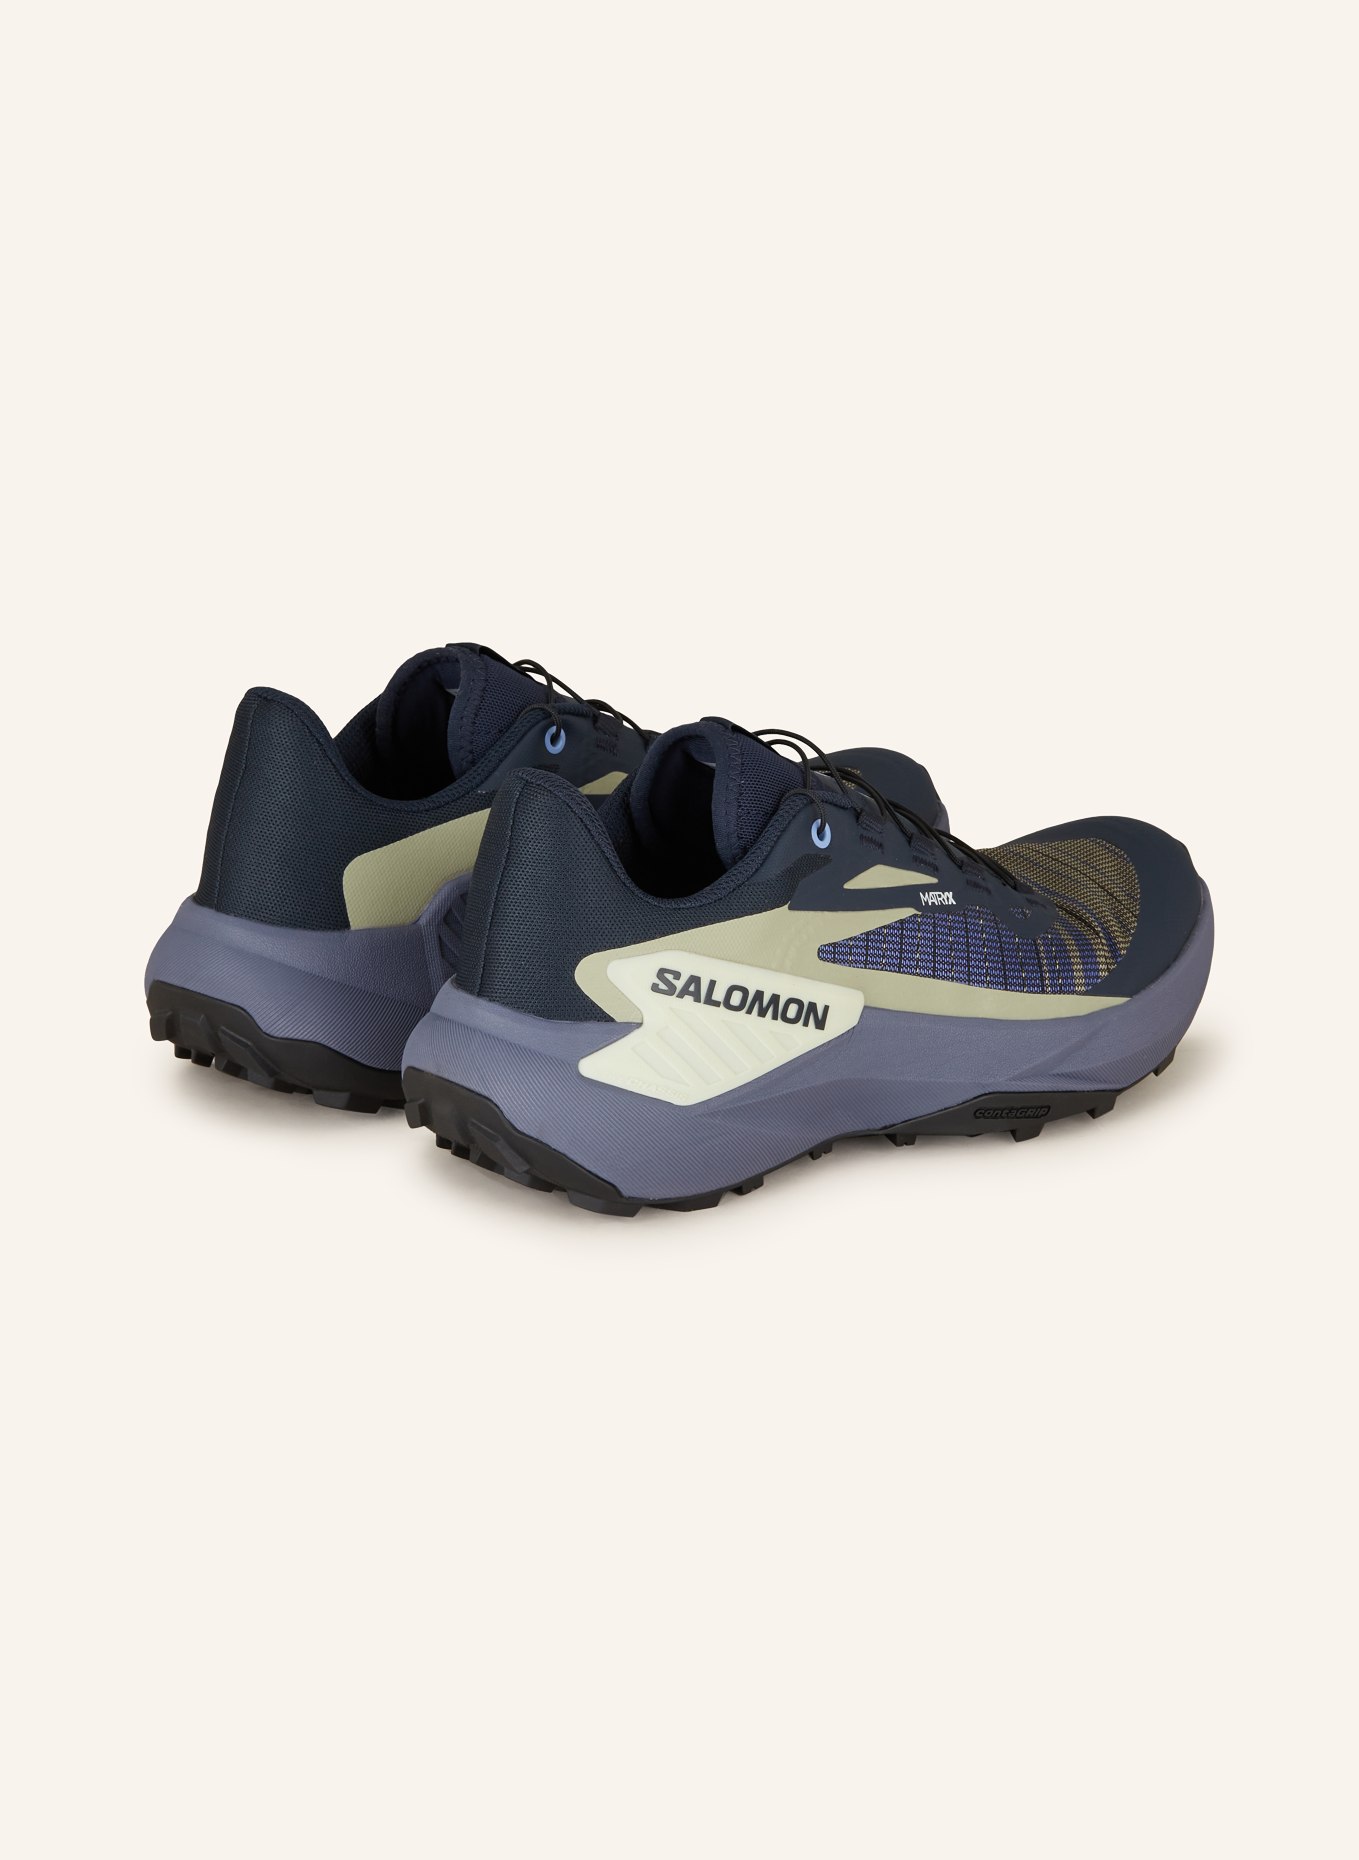 SALOMON Trailrunning-Schuhe GENESIS, Farbe: BLAU/ SCHWARZ/ KHAKI (Bild 2)